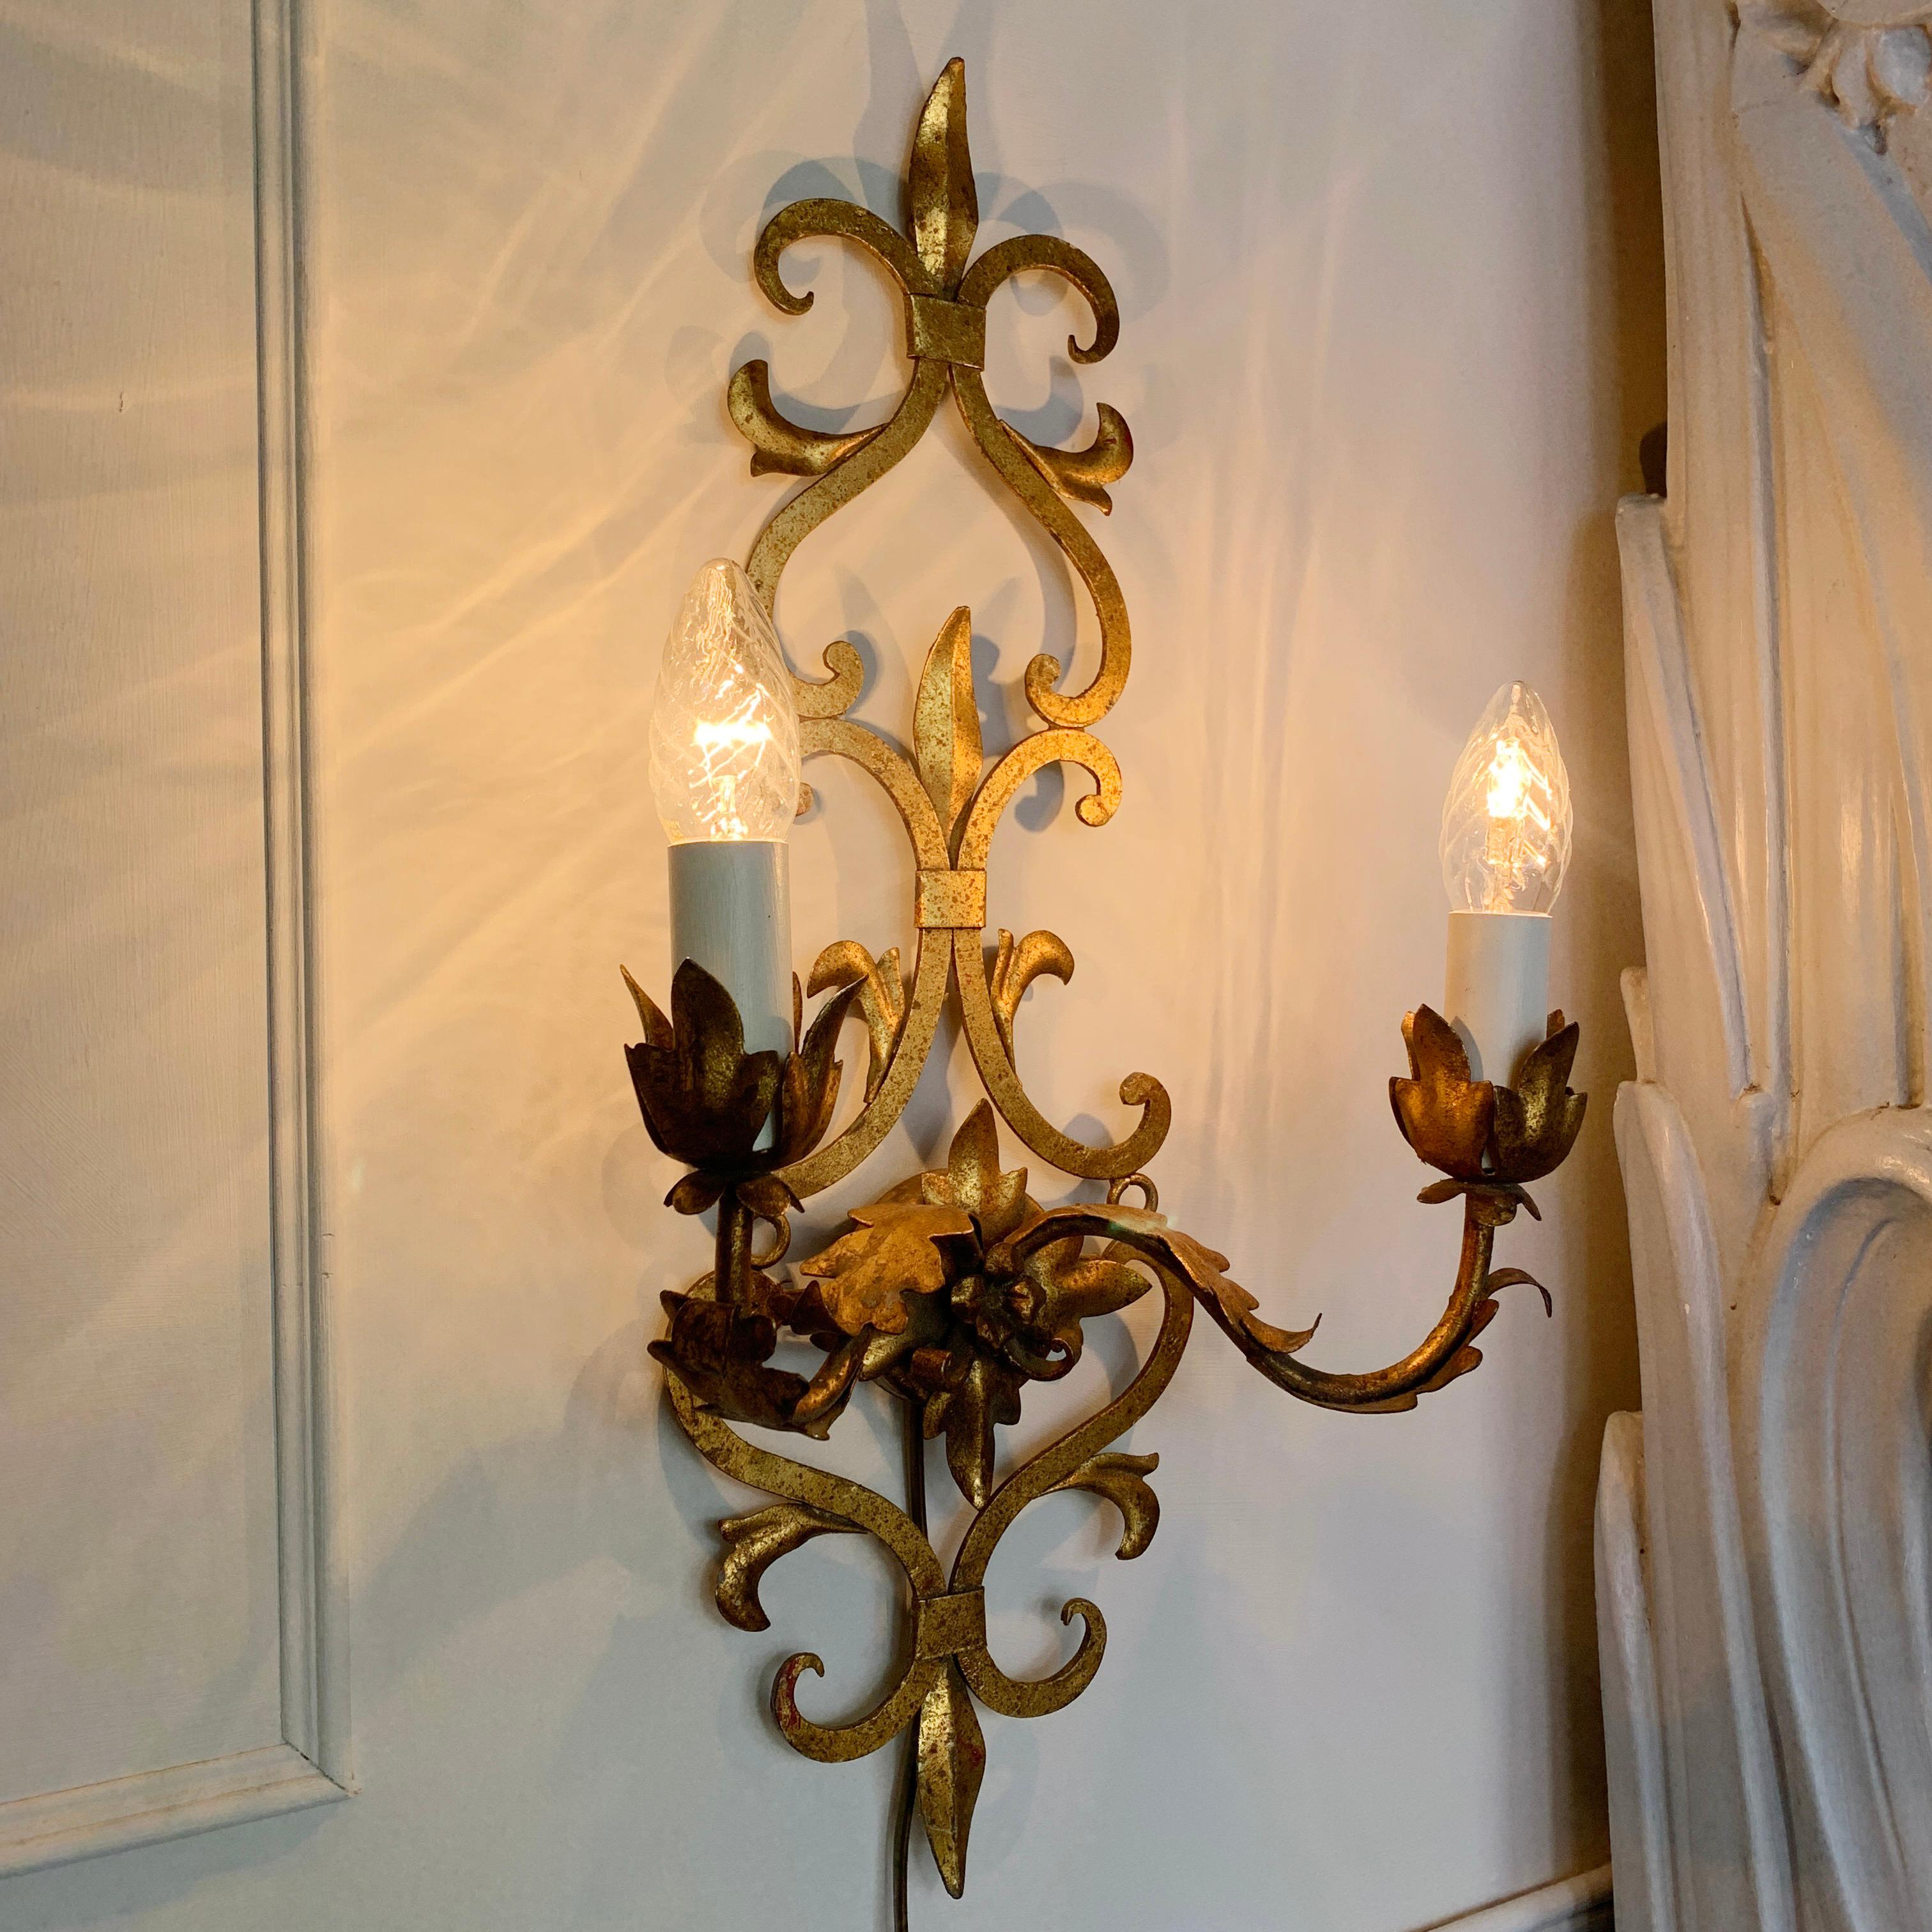 Applique baroque espagnole, en fer forgé et doré, avec des détails de feuilles appliquées, datant des années 1950. 

Mesures : Hauteur 54 cm x largeur 28 cm x profondeur 14 cm (rosace 7 cm).